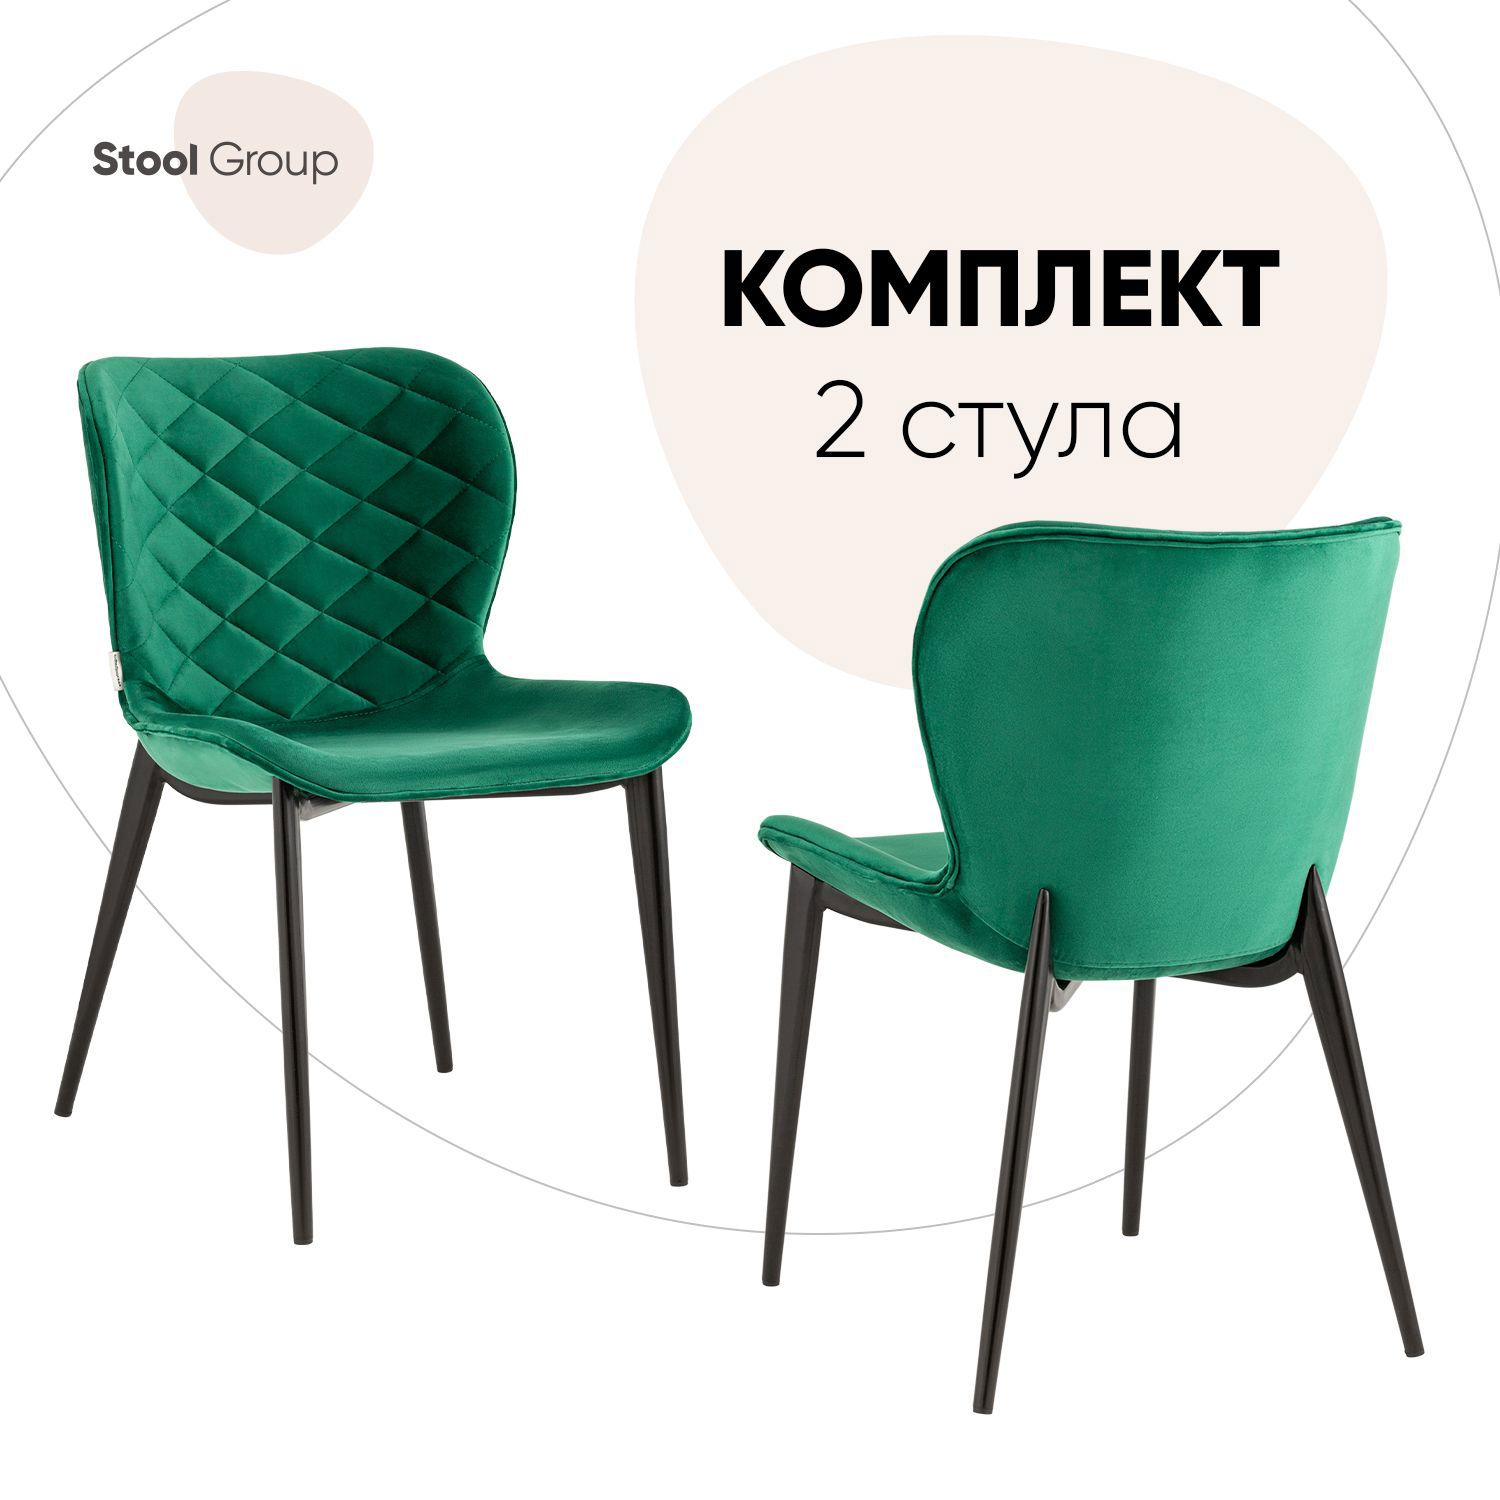 91000728 Комплект кухонных стульев 2 шт 80х61х51 см велюр цвет зеленый гамми STLM-0432977 СТУЛ ГРУП